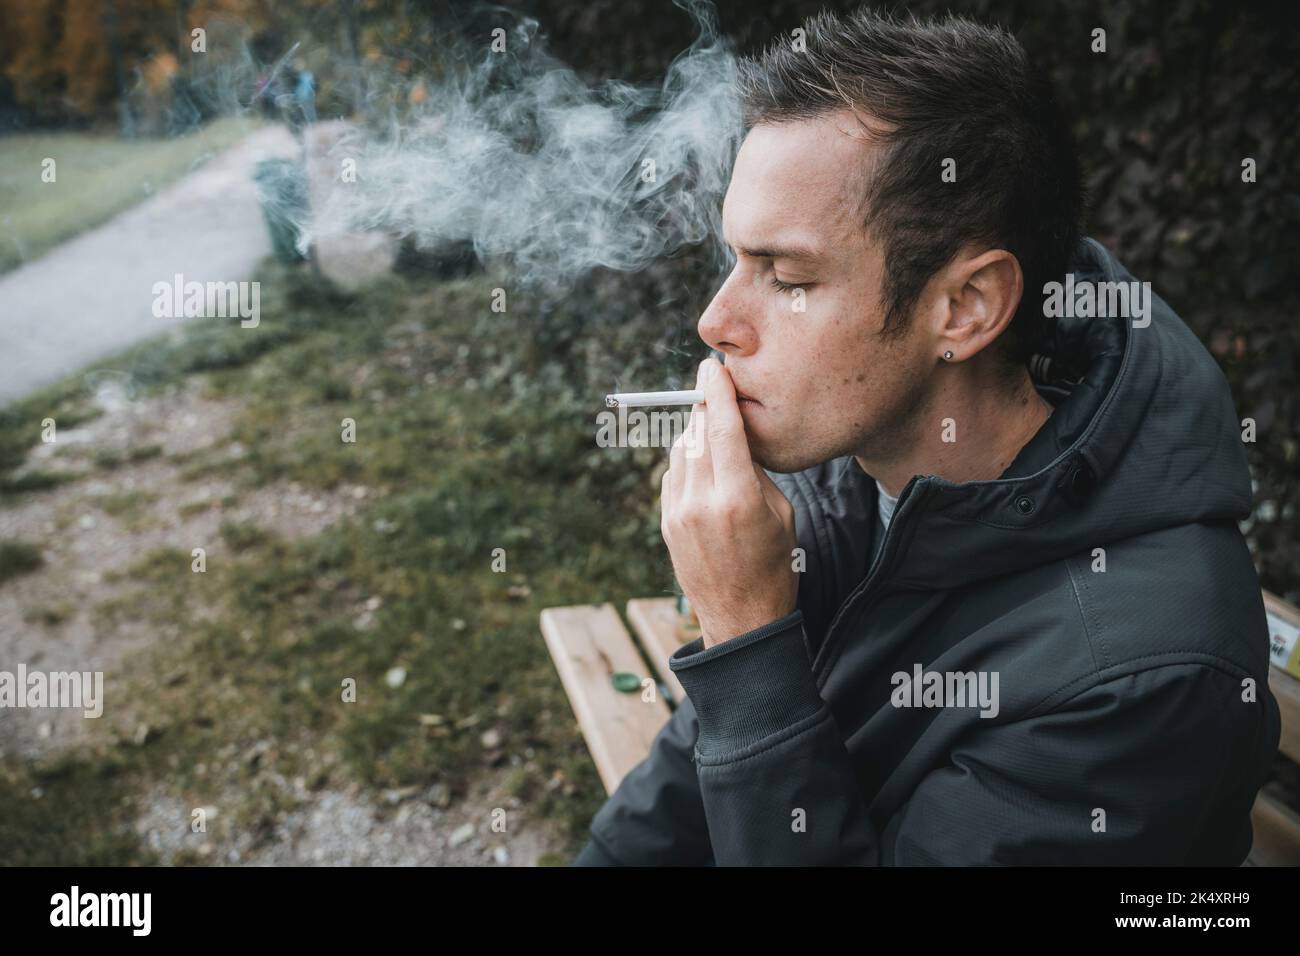 03 de octubre de 2022: Joven sentado en un banco del parque Fumando un cigarrillo. Fumador tira De un cigarrillo ardiente, Imagen de Símbolo Fumar Foto de stock